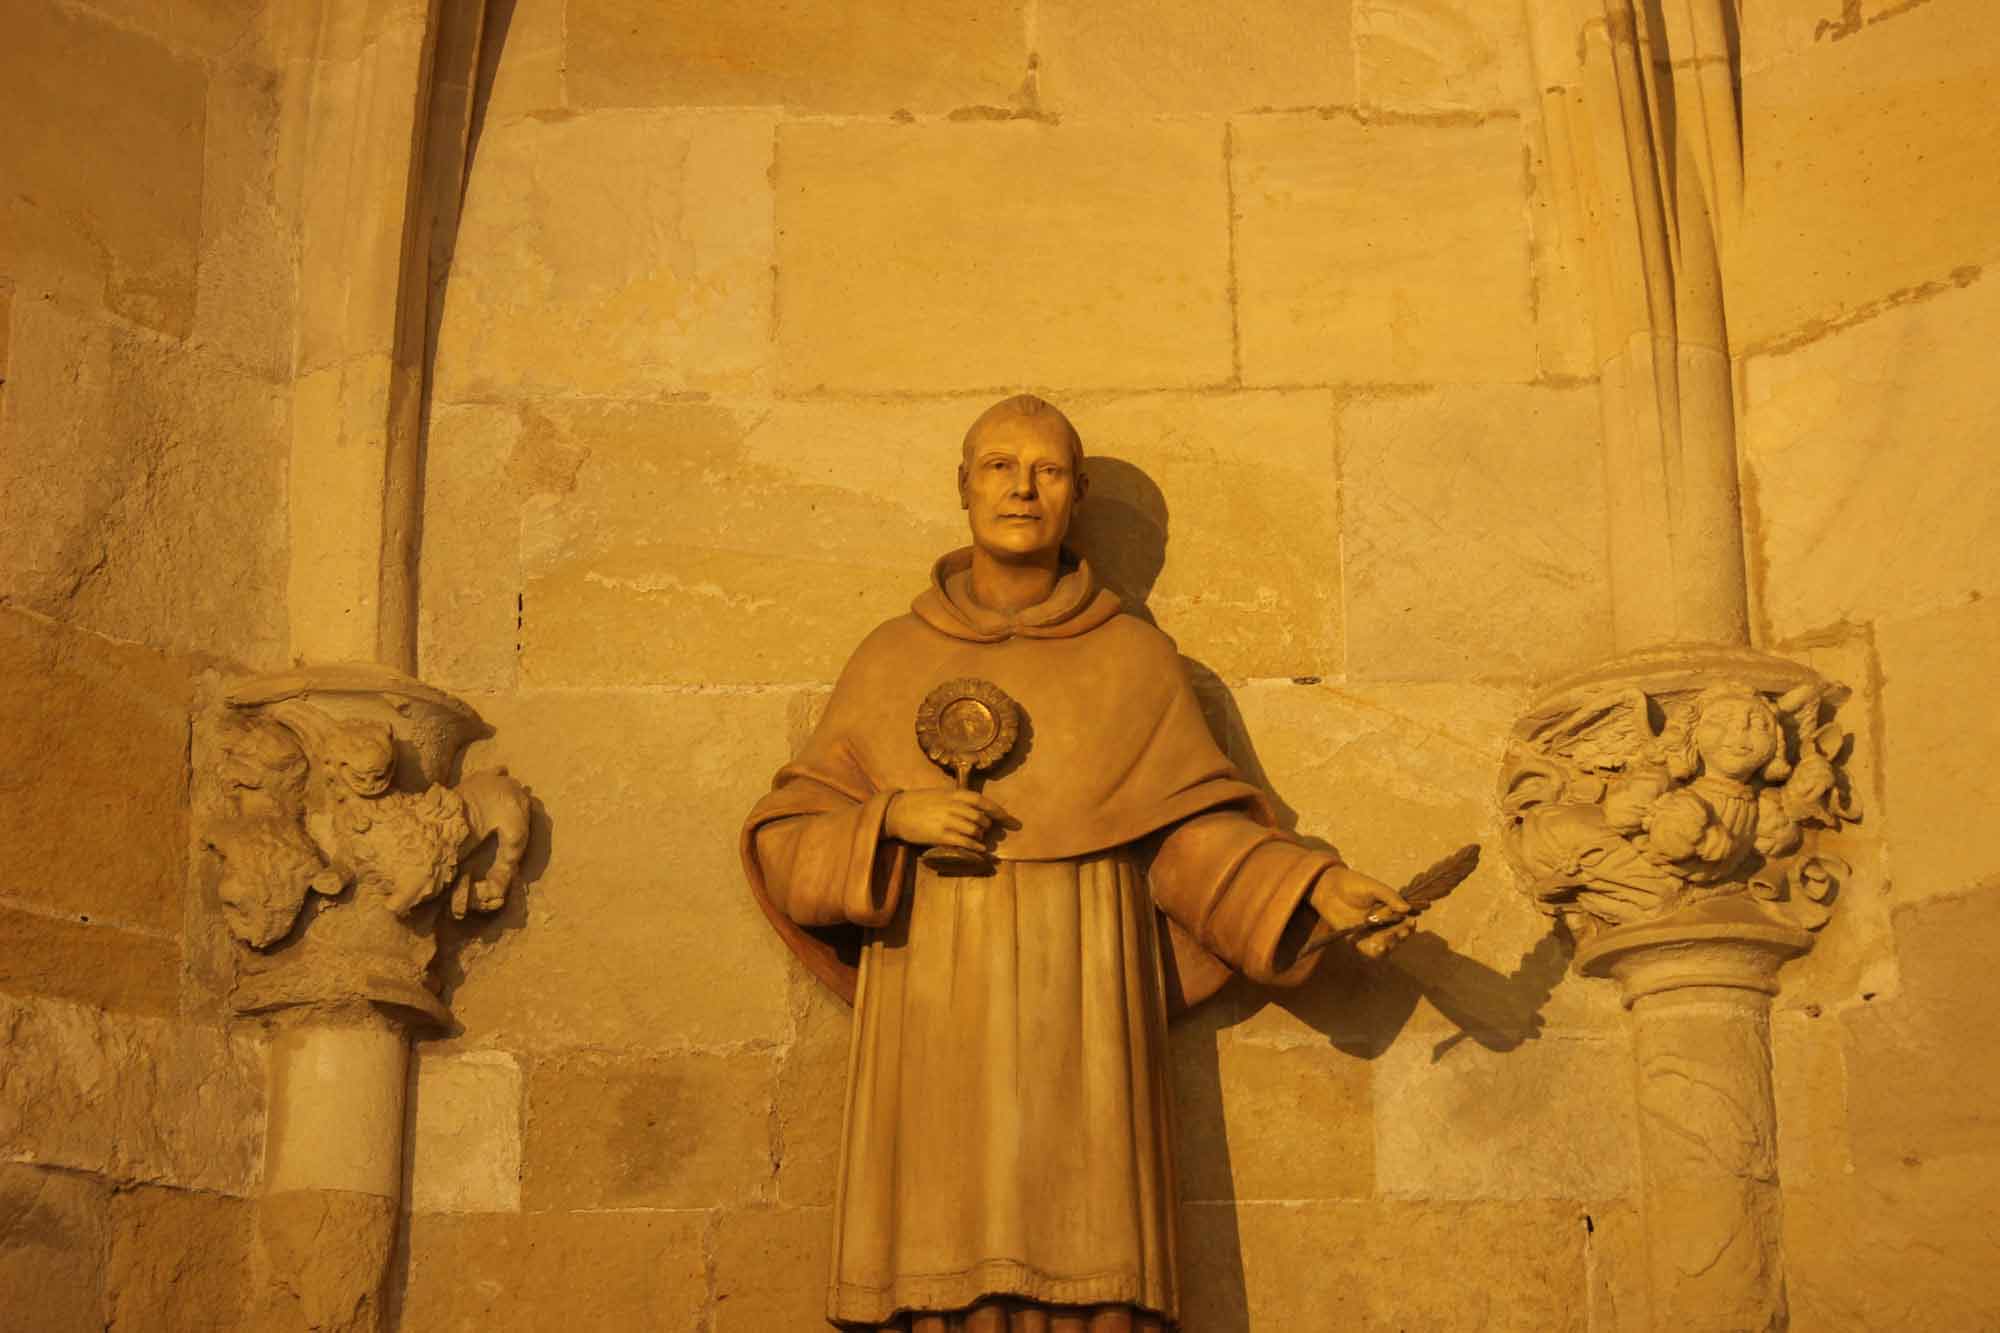 Catedral de Tarragona